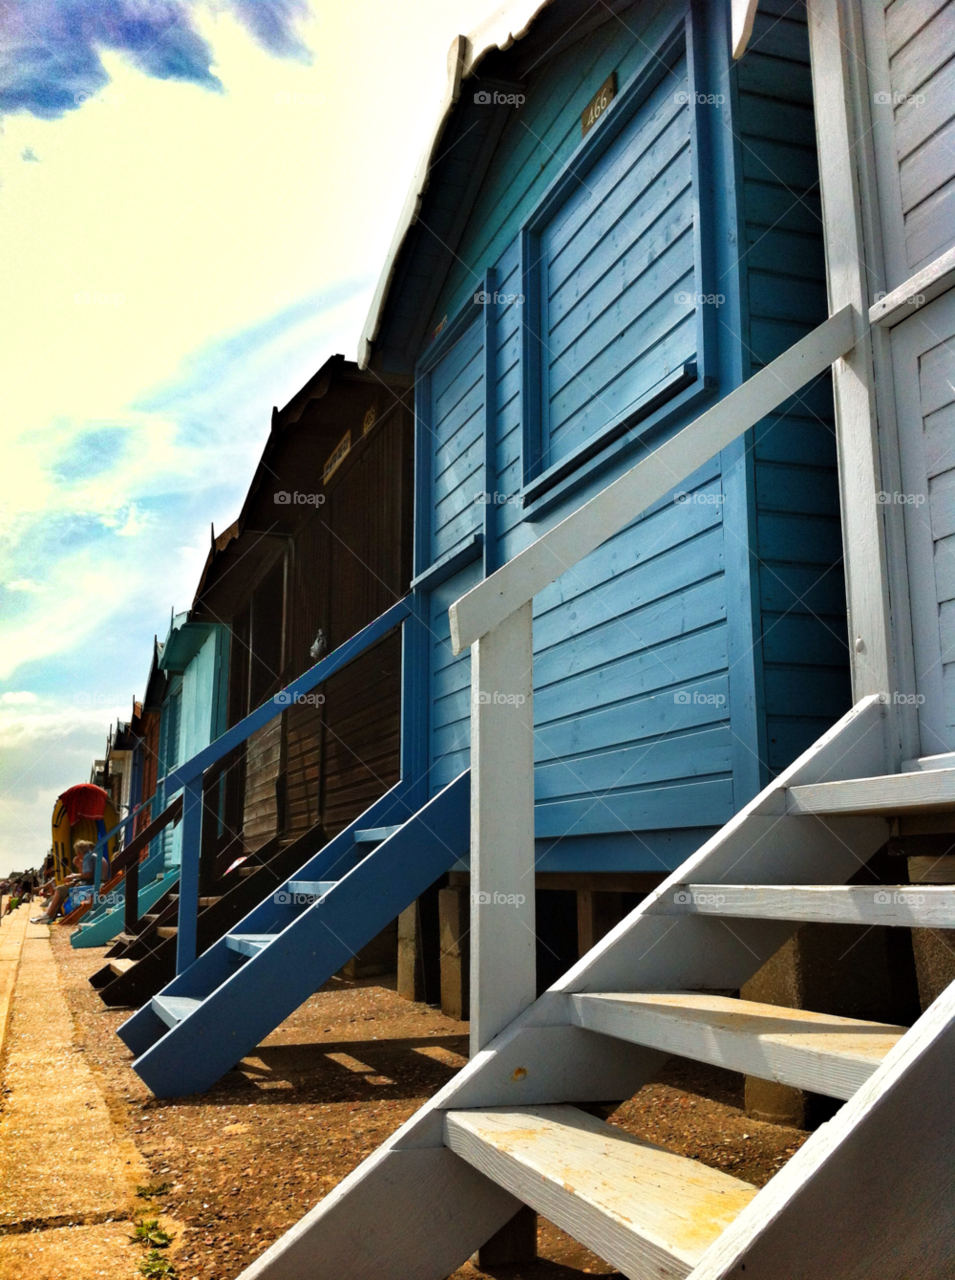 beach blue cabins beach hut by SirBluto